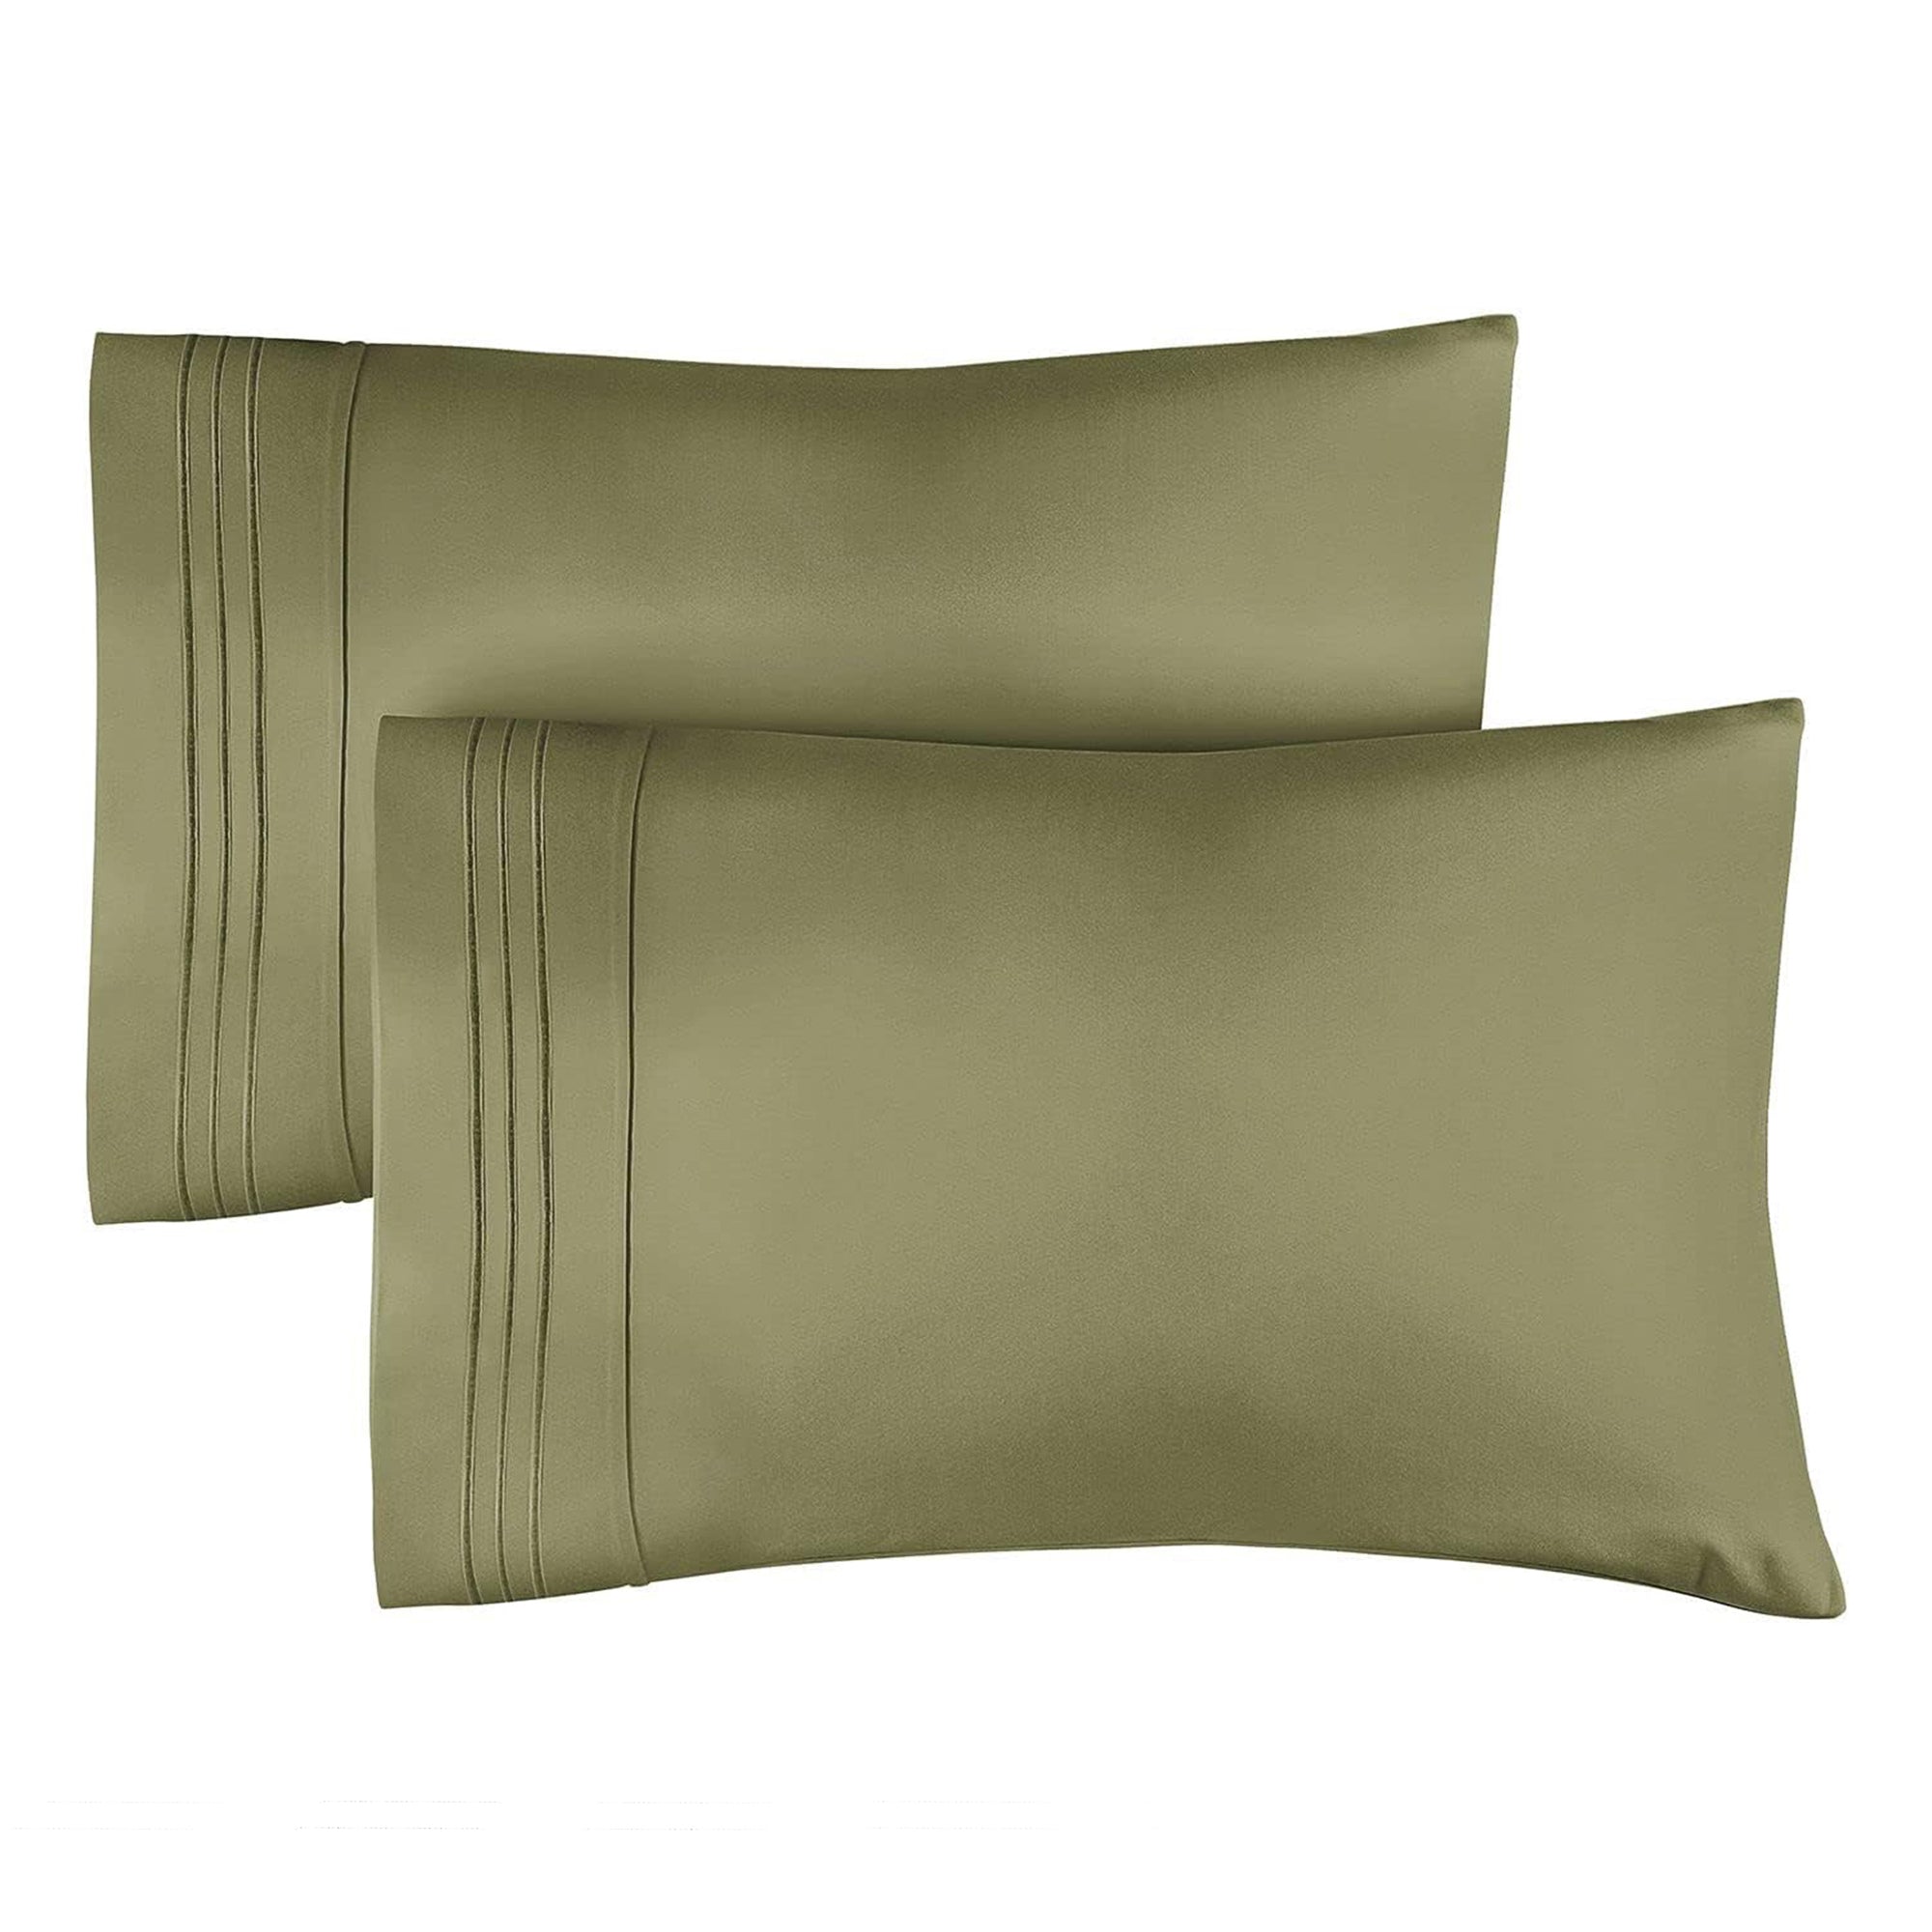 2 Pillowcase Set - Sage Green